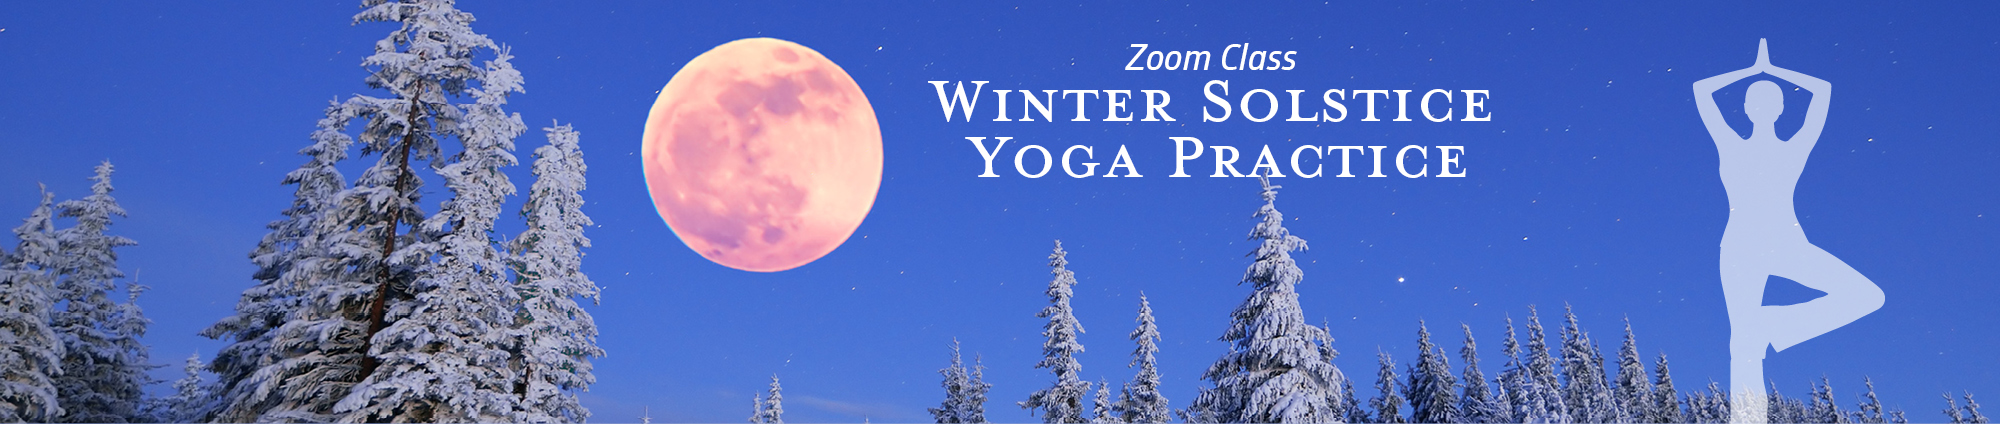 Winter Solstice Yoga Practice